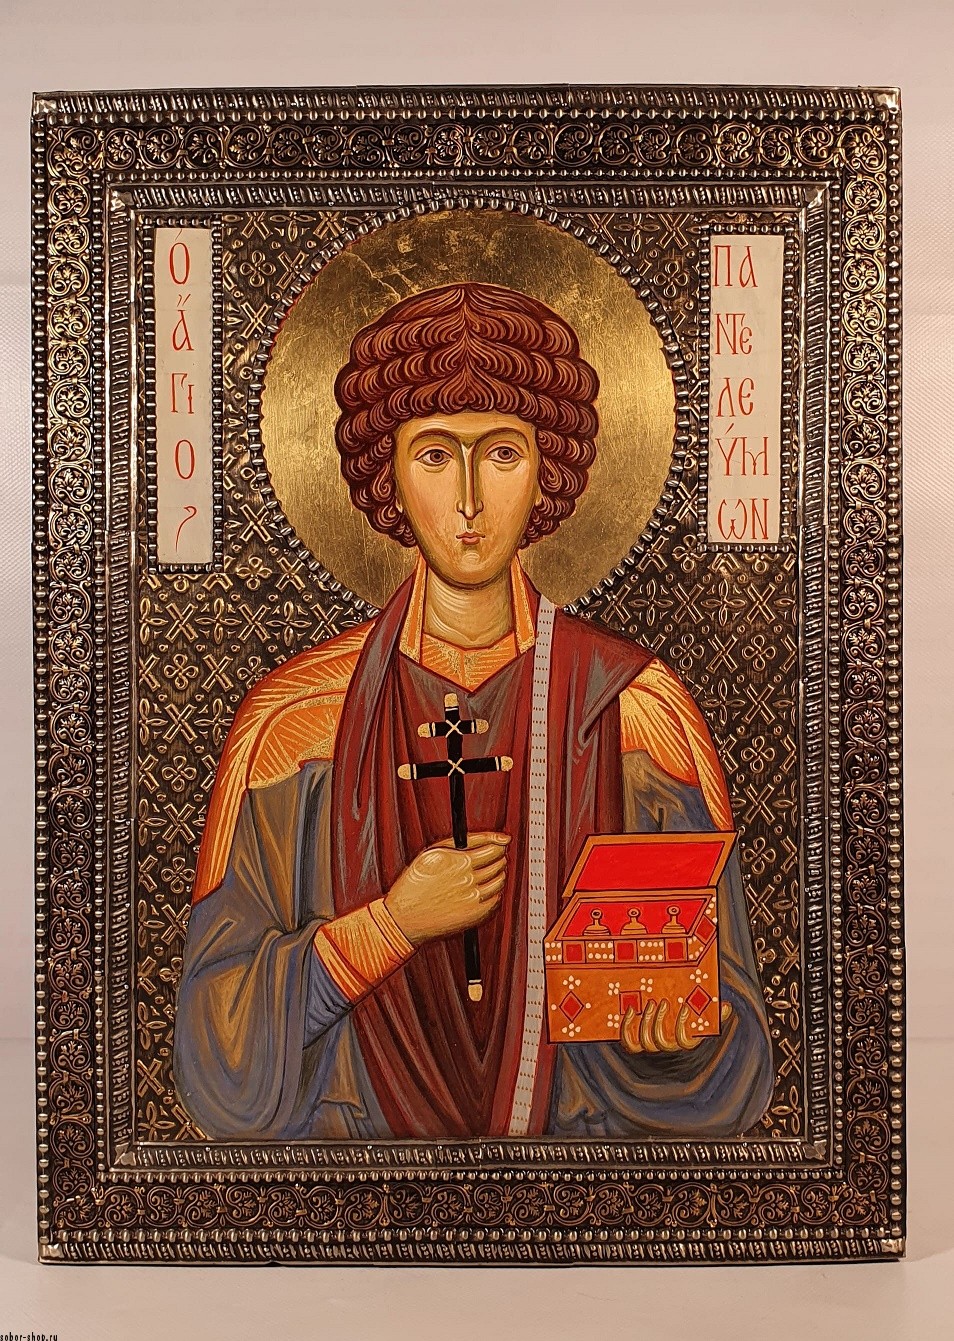 Икона Св. великомученика Пантелеймона